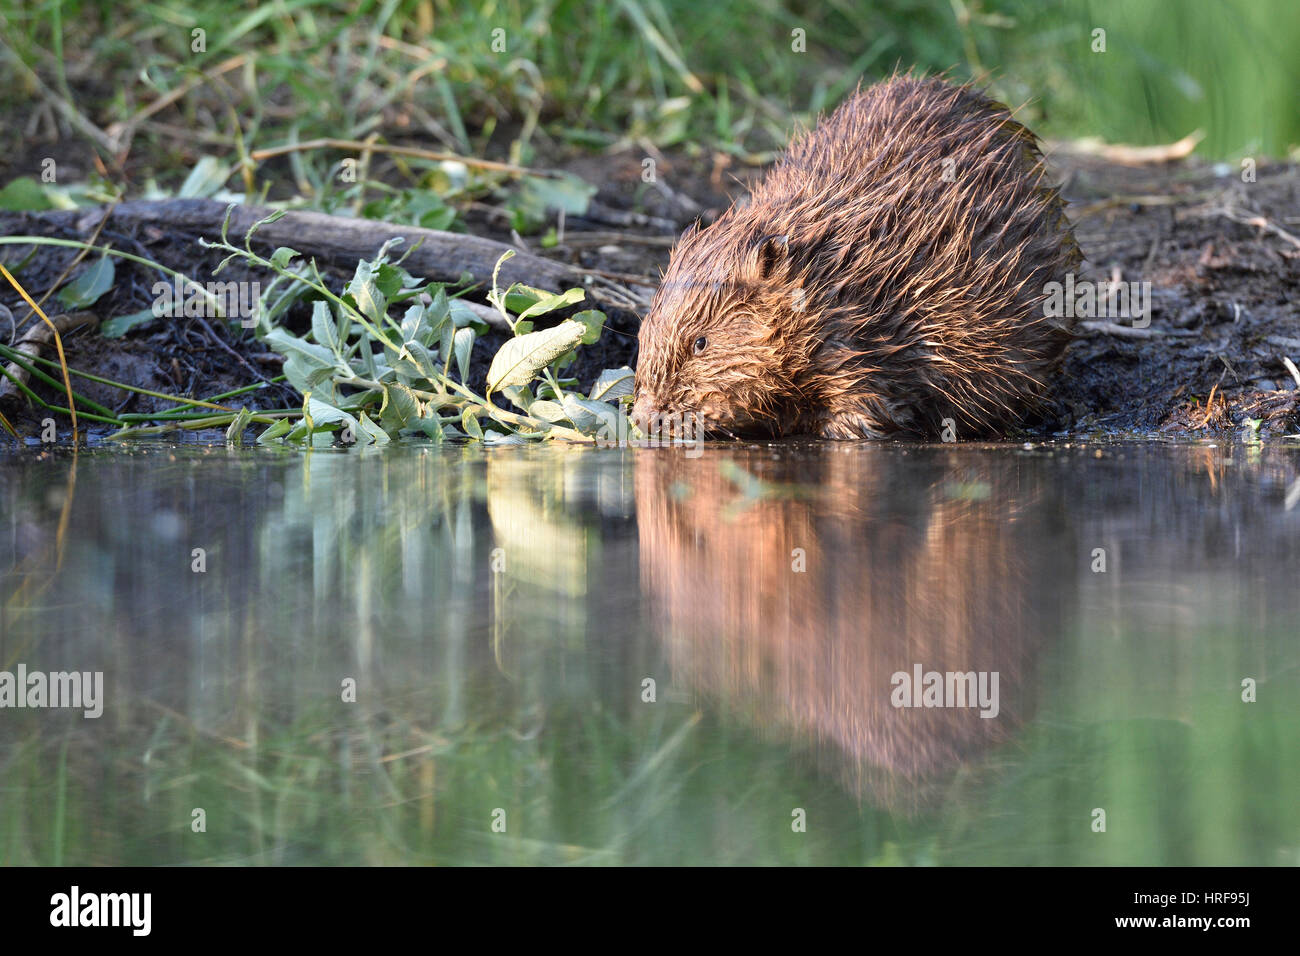 European beaver (Castor fiber) feeding the water, near Grimma, Saxony, Germany Stock Photo